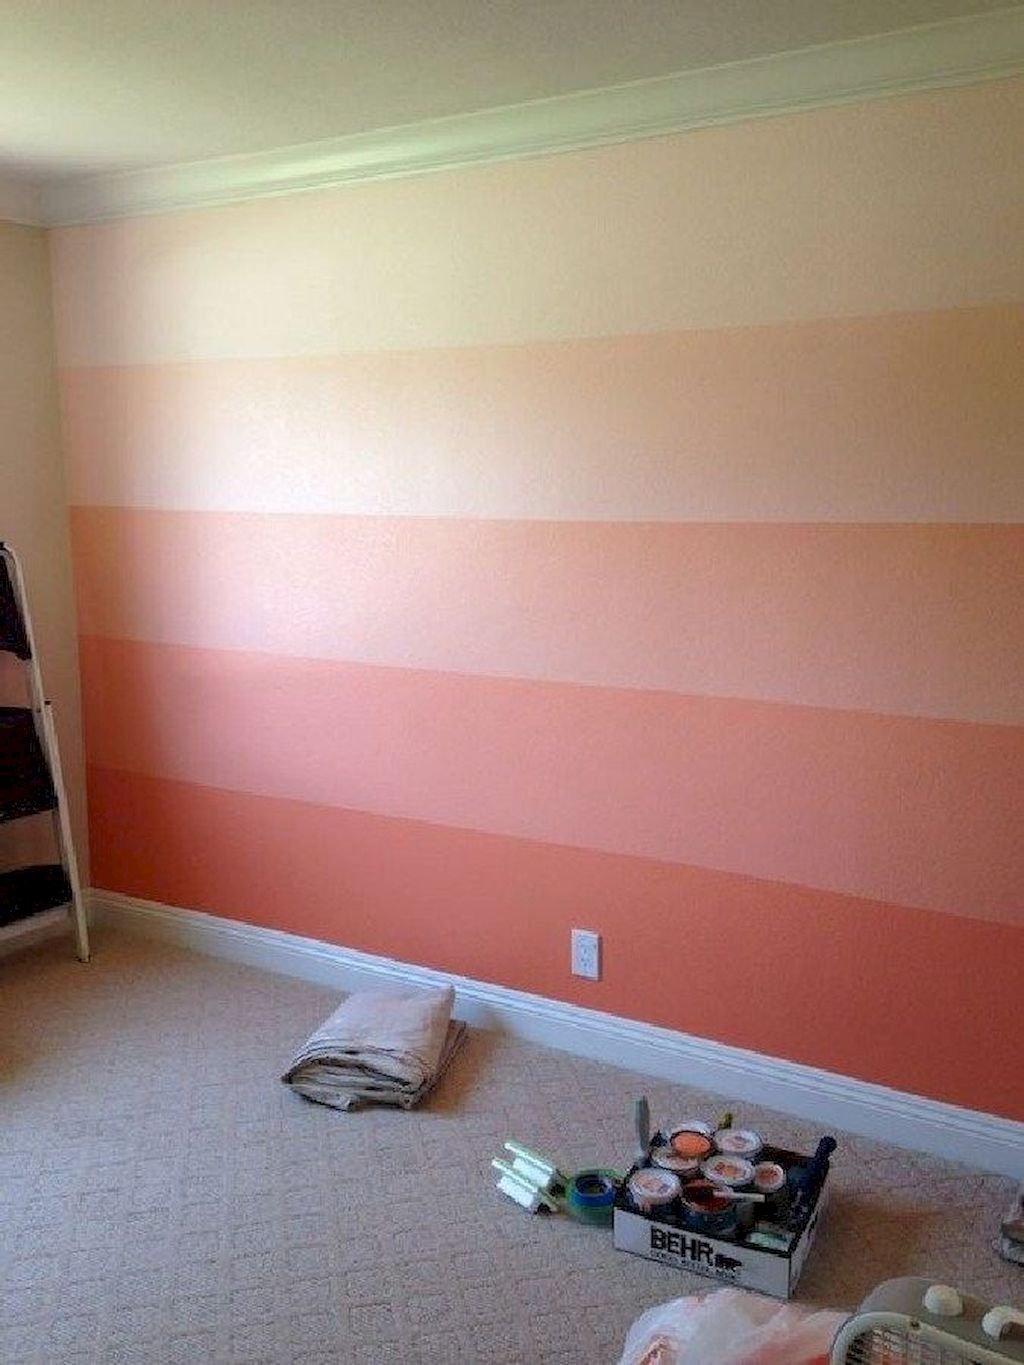 Лучшие краски для покраски обоев. Покраска стен. Краска для стек вквартире. Стены Покрашенные колером. Покраска стан в квартире.